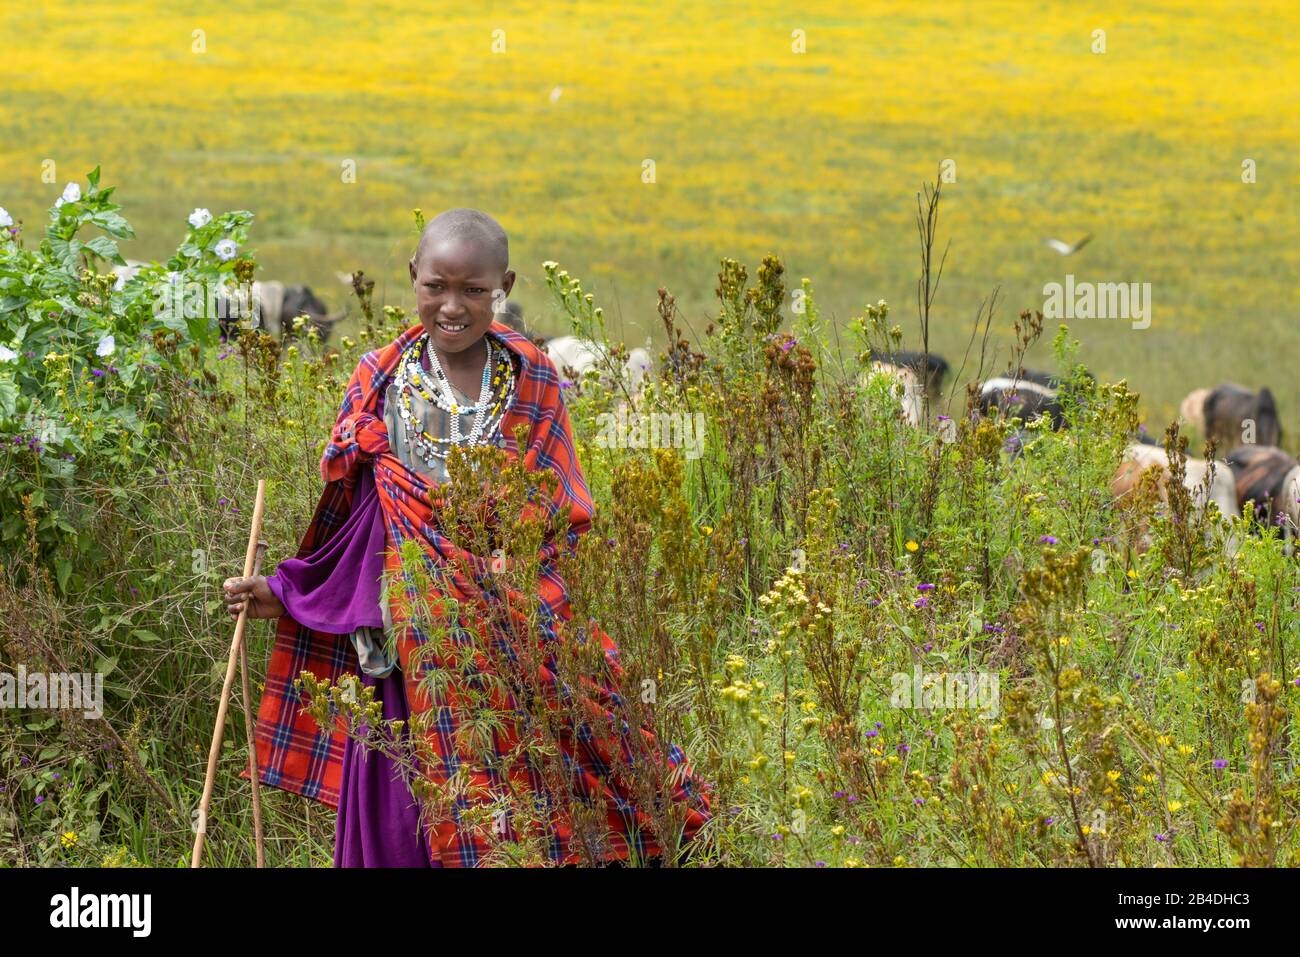 Tanzania, Northern Tanzania at the end of the rainy season in May, Serengeti National Park, Ngorongoro Crater, Tarangire, Arusha and Lake Manyara, Maasai girl with herd Stock Photo